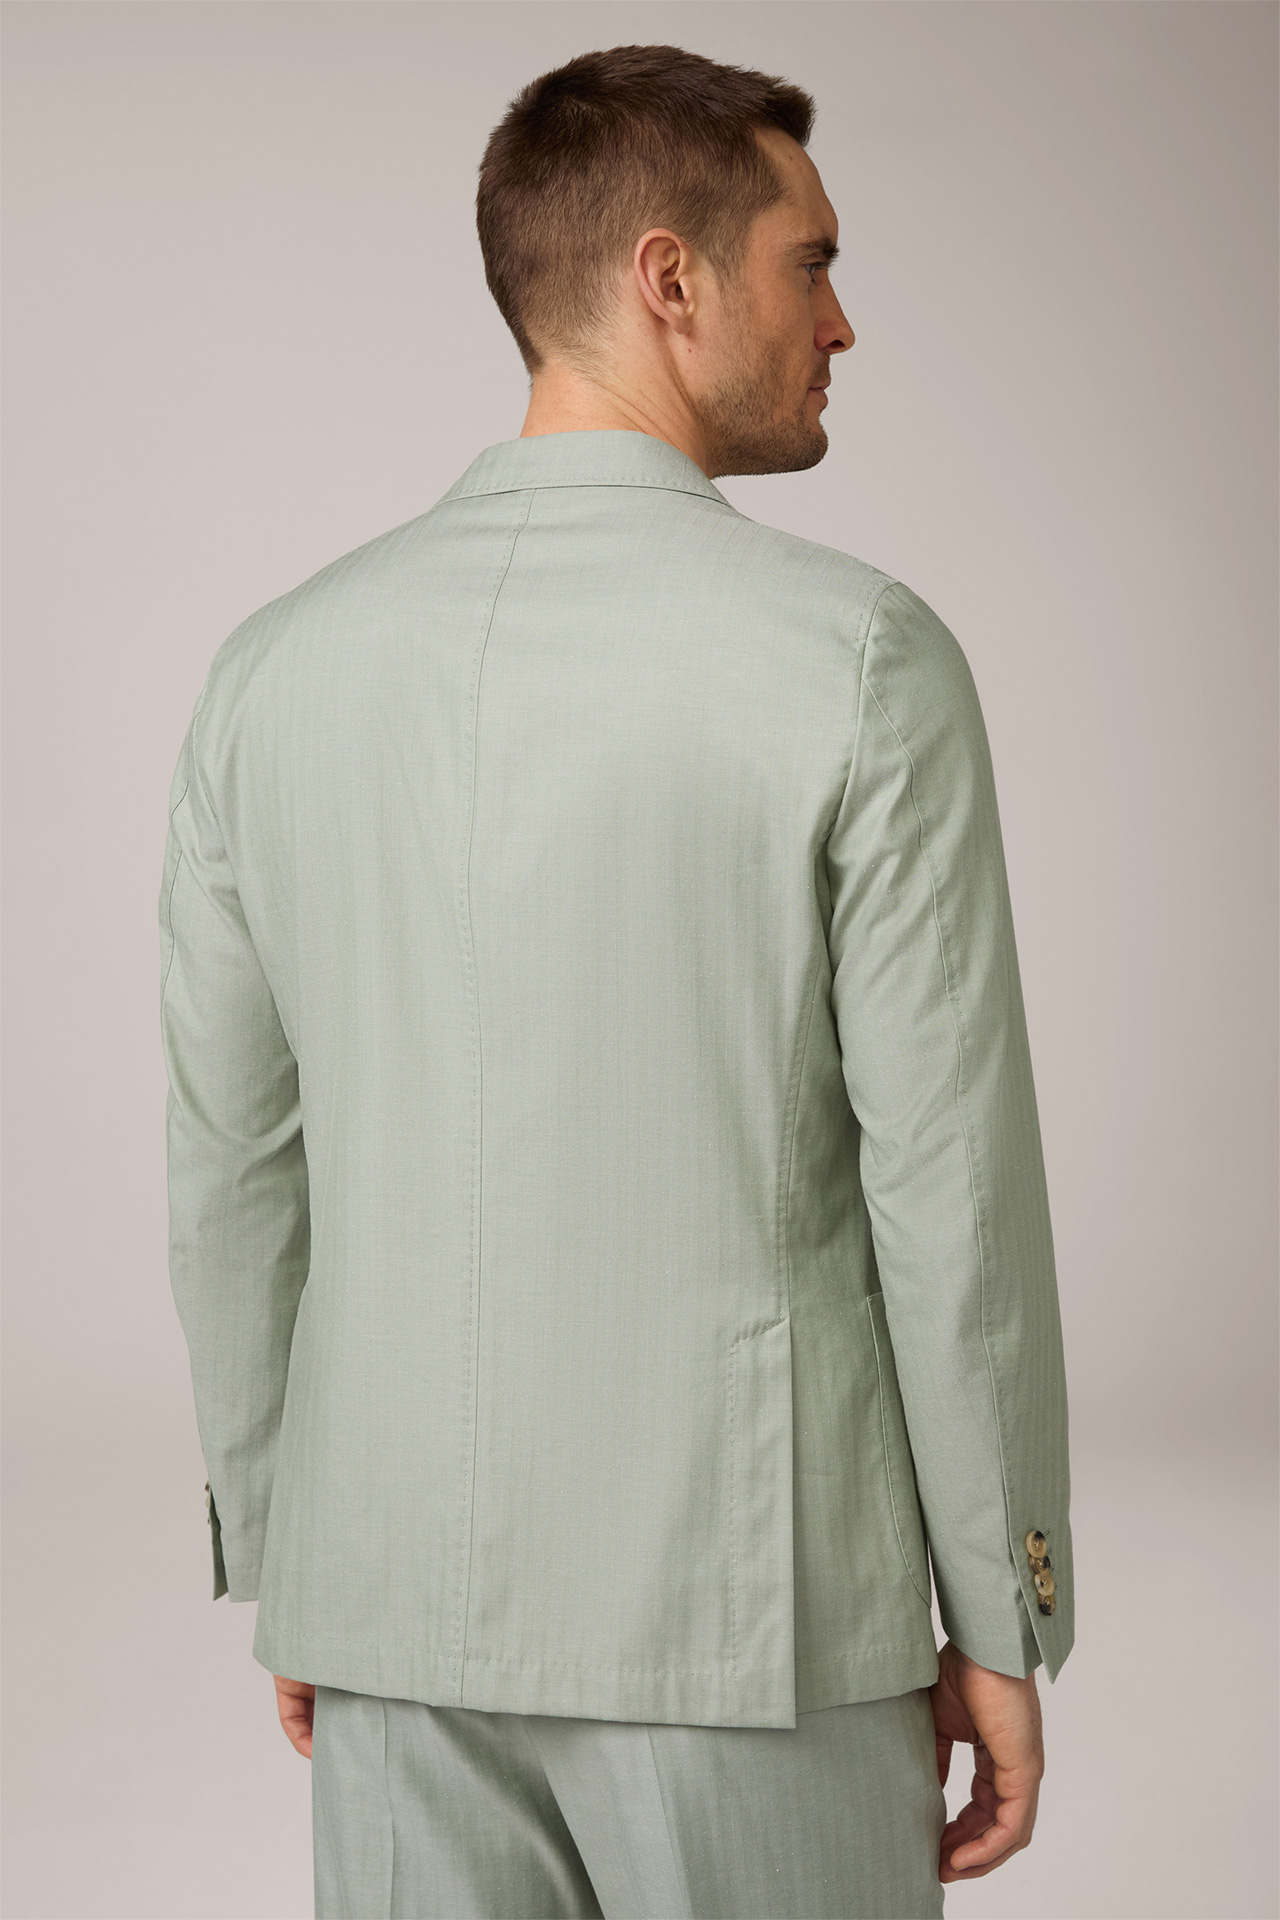 Veste de costume Gigo modulable en coton mélangé à de la soie, en vert clair à chevrons